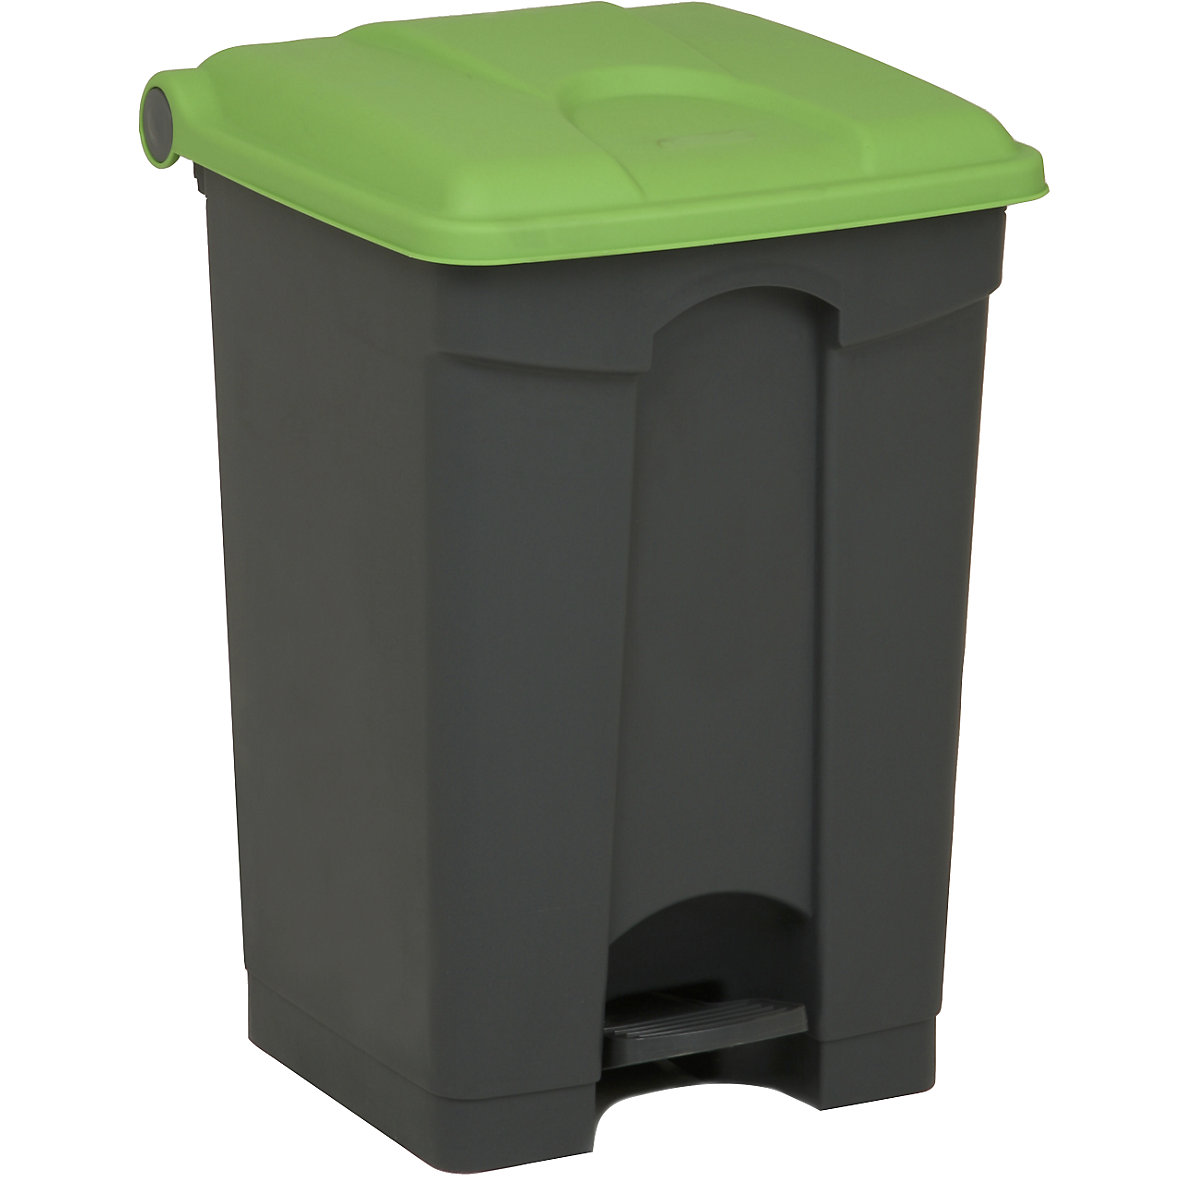 Spremnik za otpad s papučicom, volumen 45 l, ŠxVxD 410 x 600 x 400 mm, u sivoj boji, poklopac u zelenoj boji-15